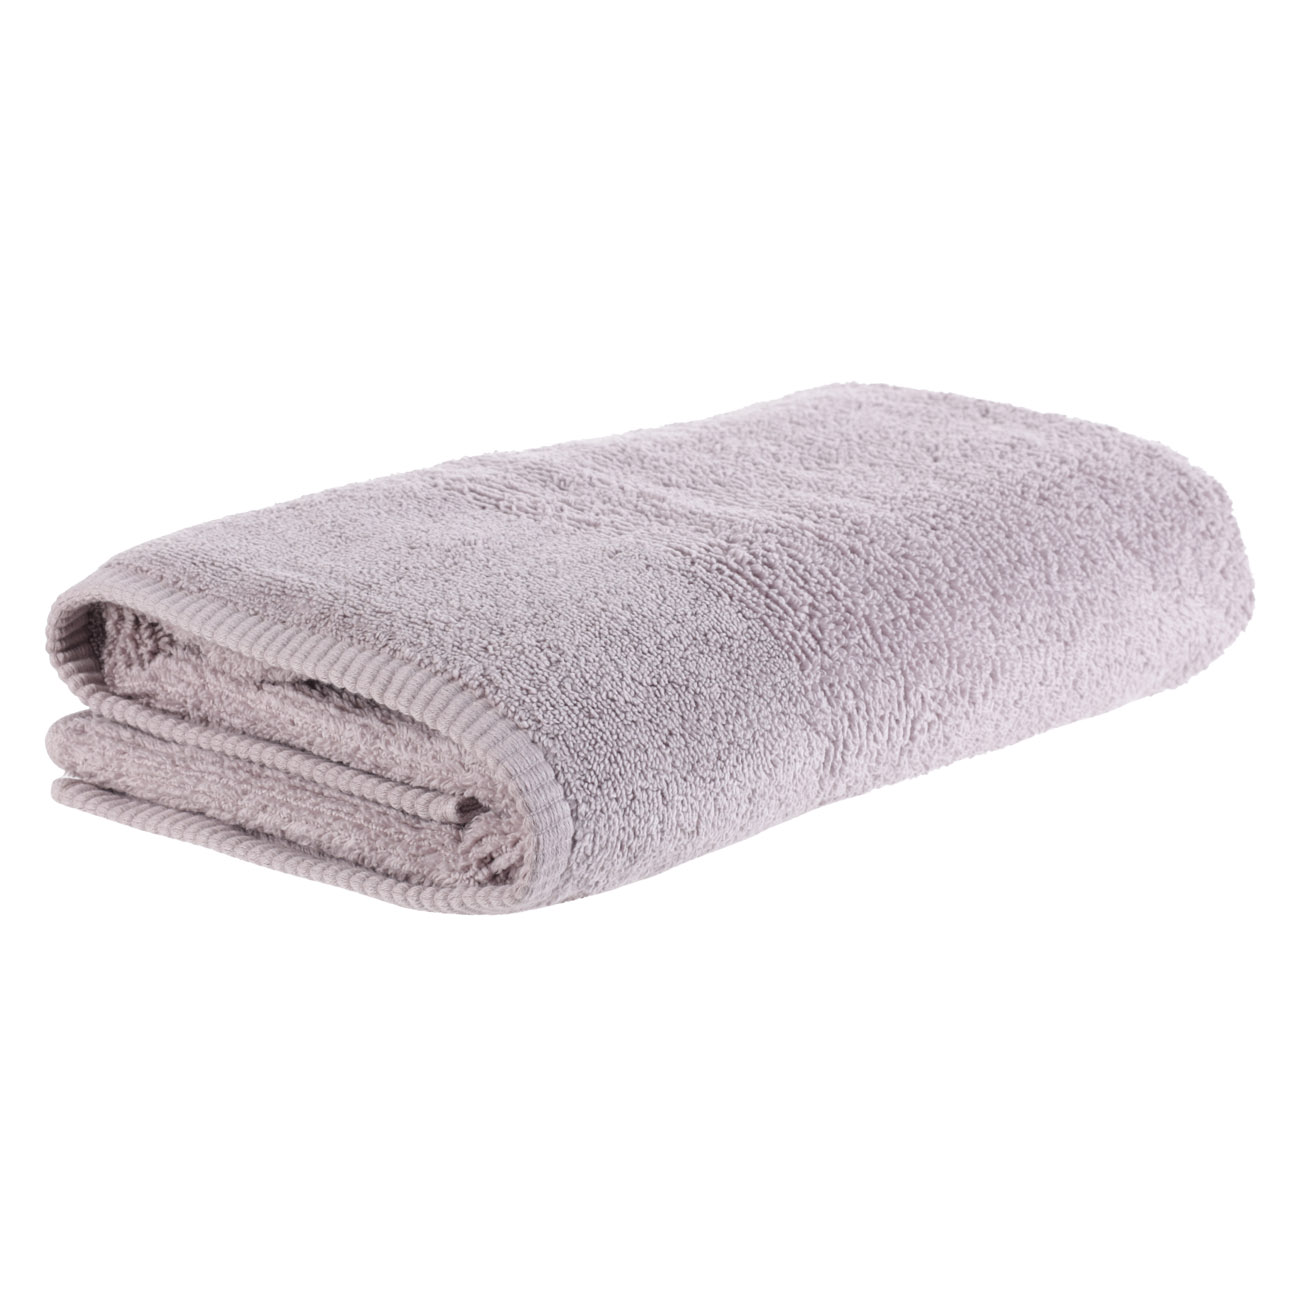 Towel, 70x140 cm, Cotton, purple, Terry cotton изображение № 2